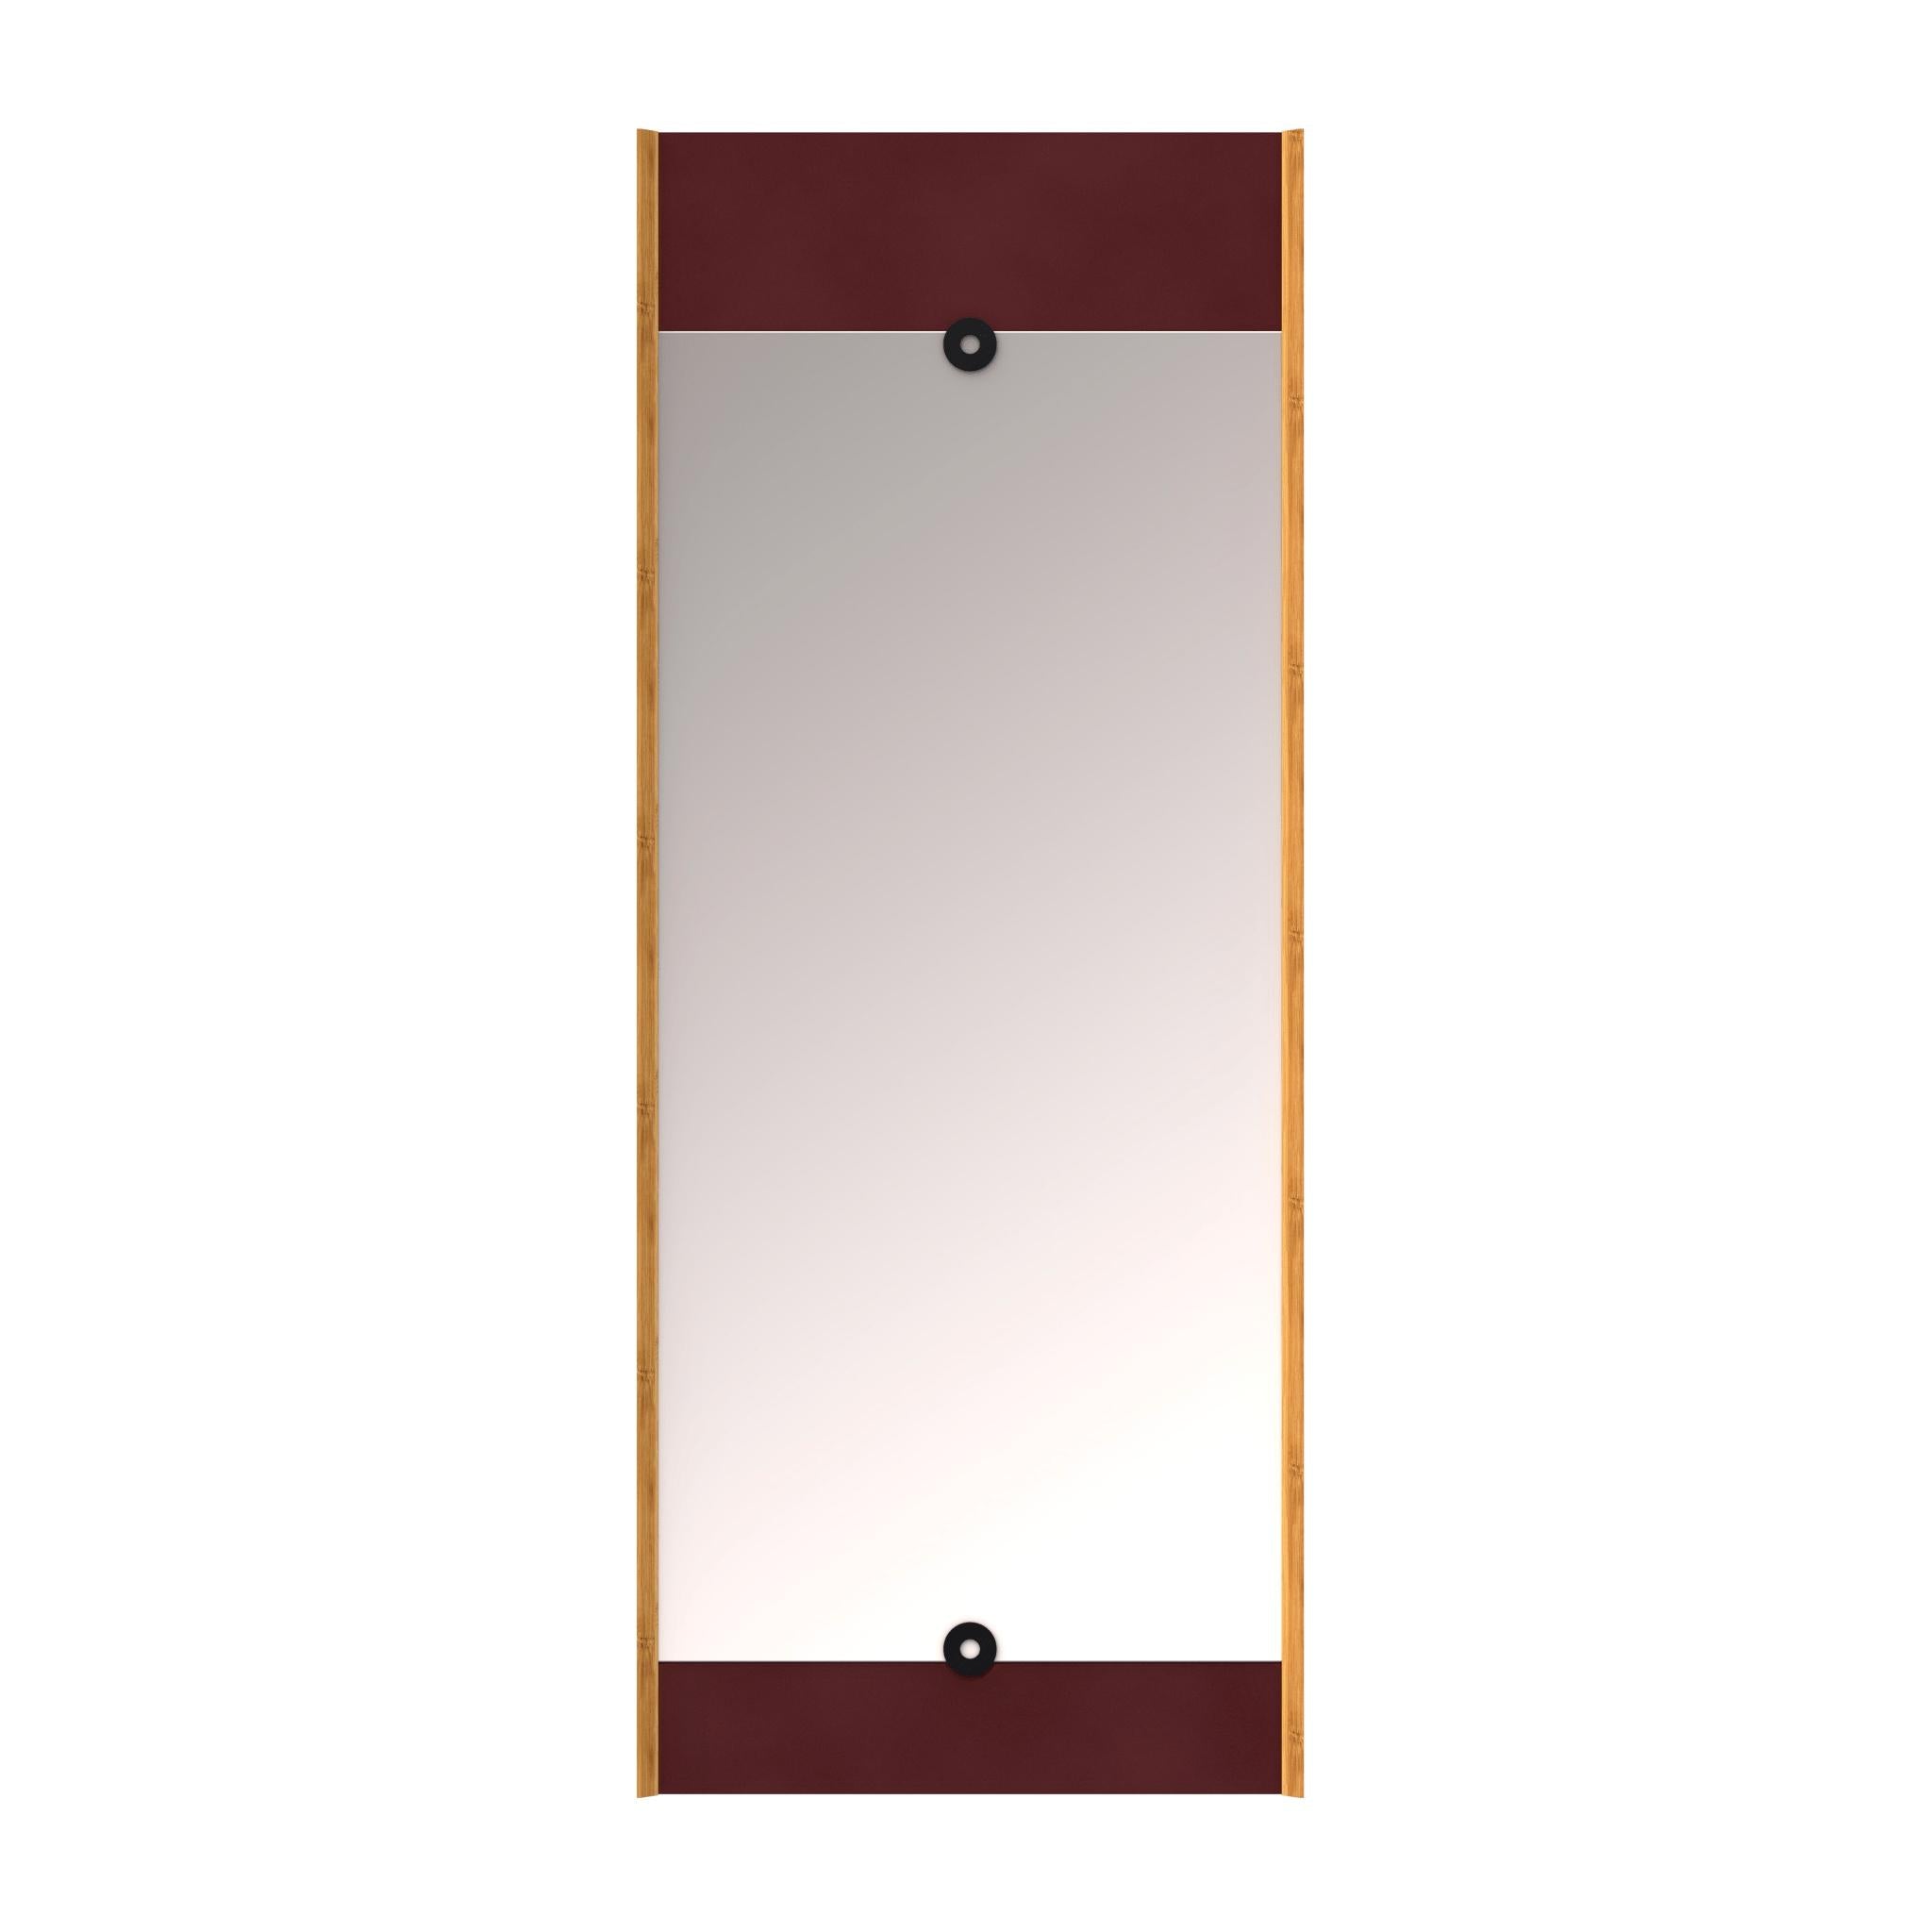 We Do Wood Miroir de couche Bourgogne rouge, 125 cm